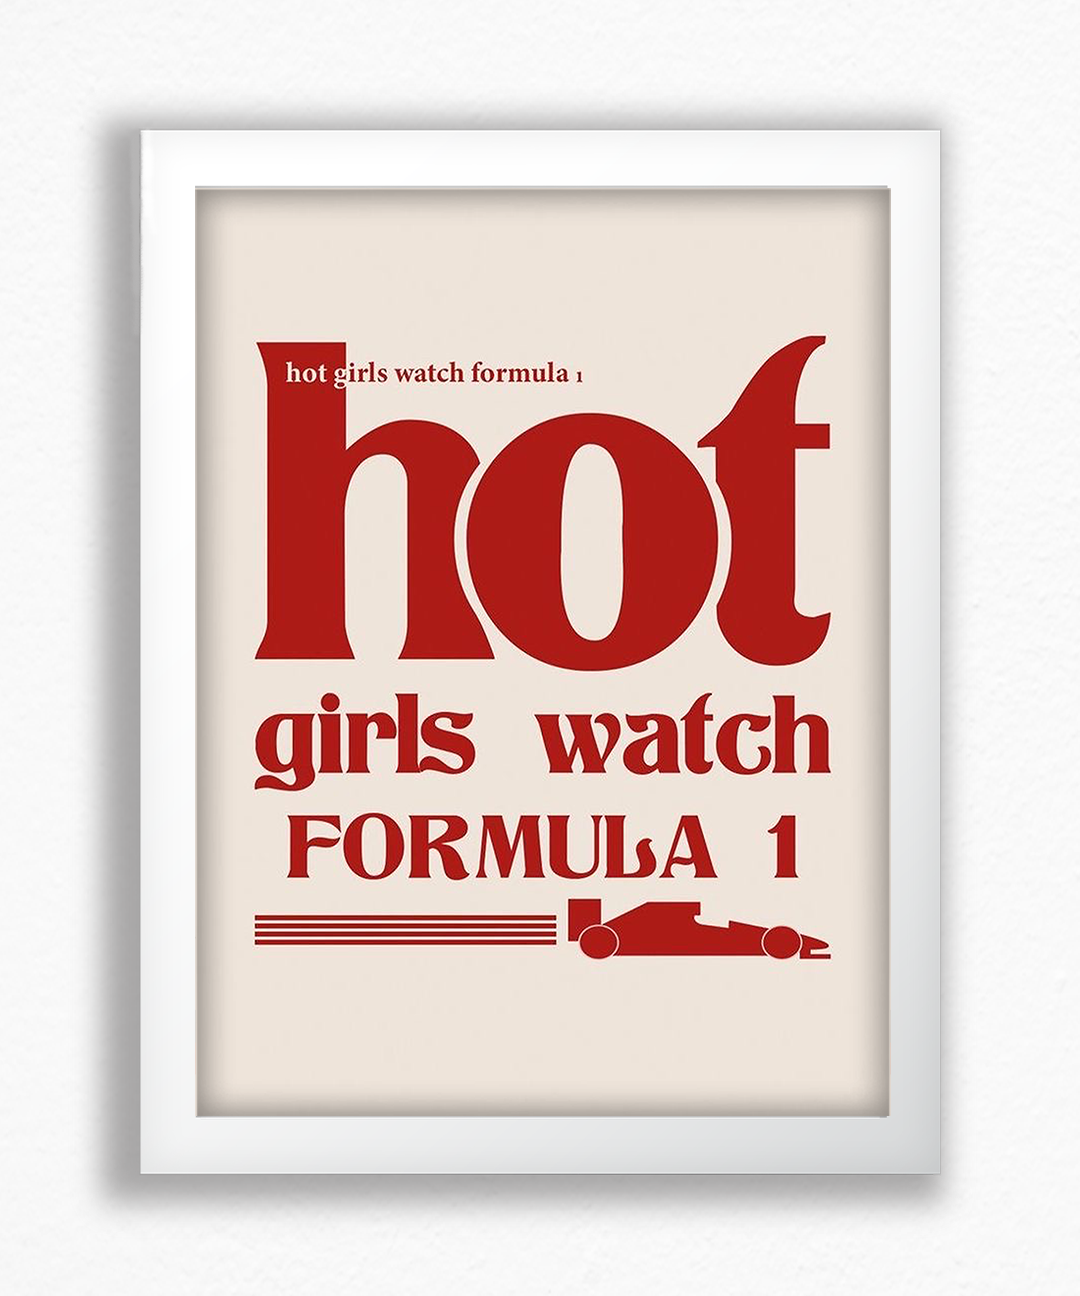 Hot girls watch formula 1